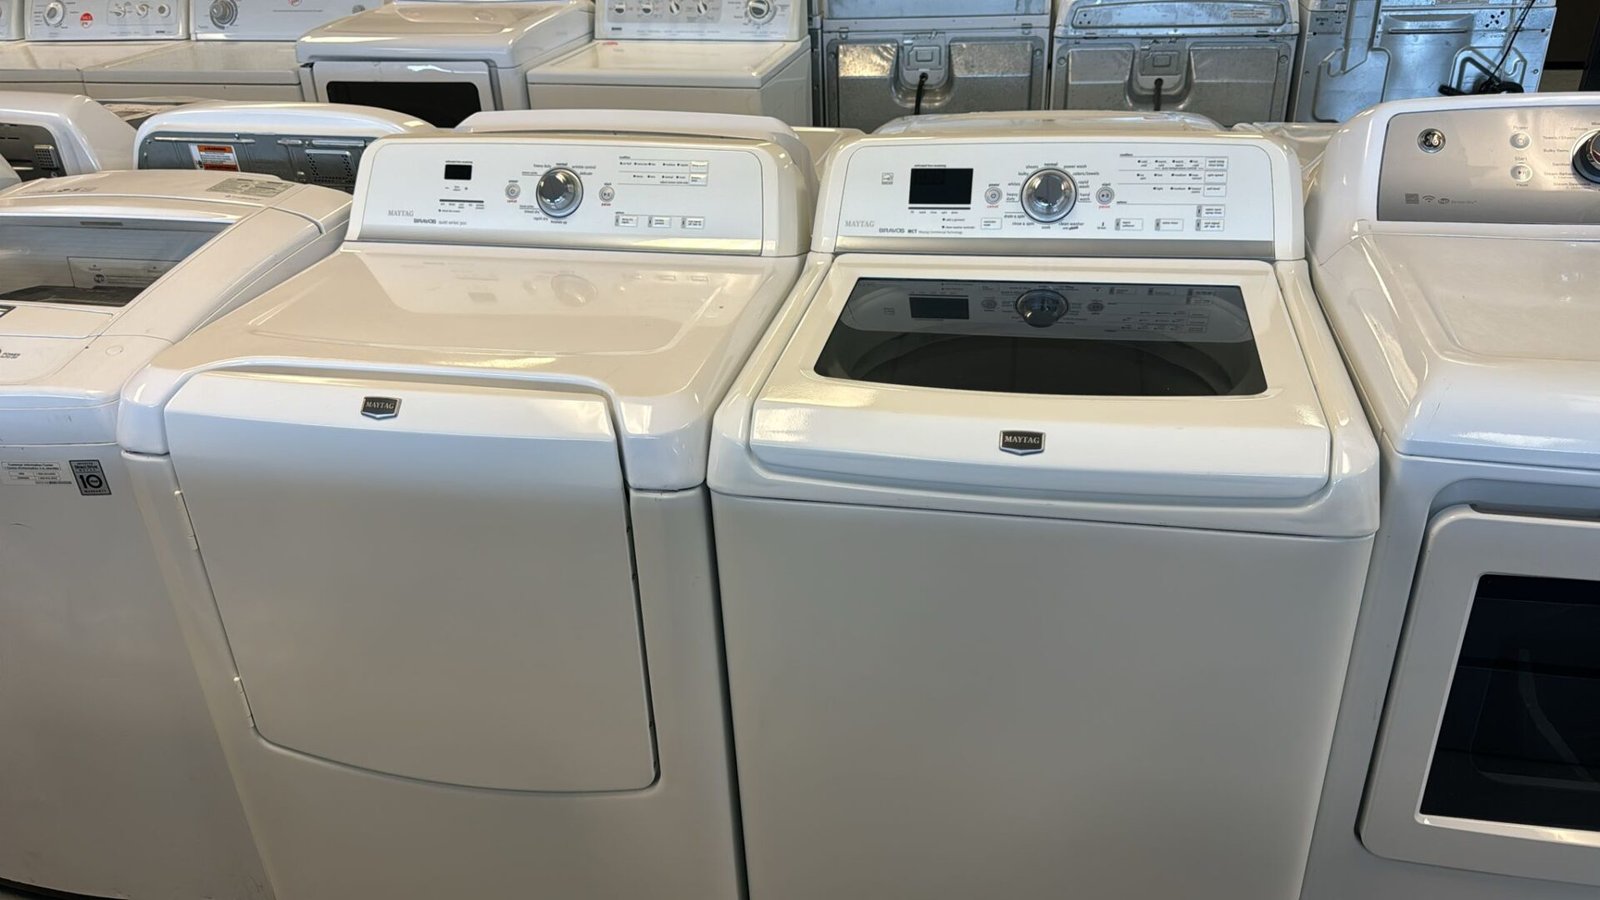 Maytag Refurbished Washer Dryer Set – White